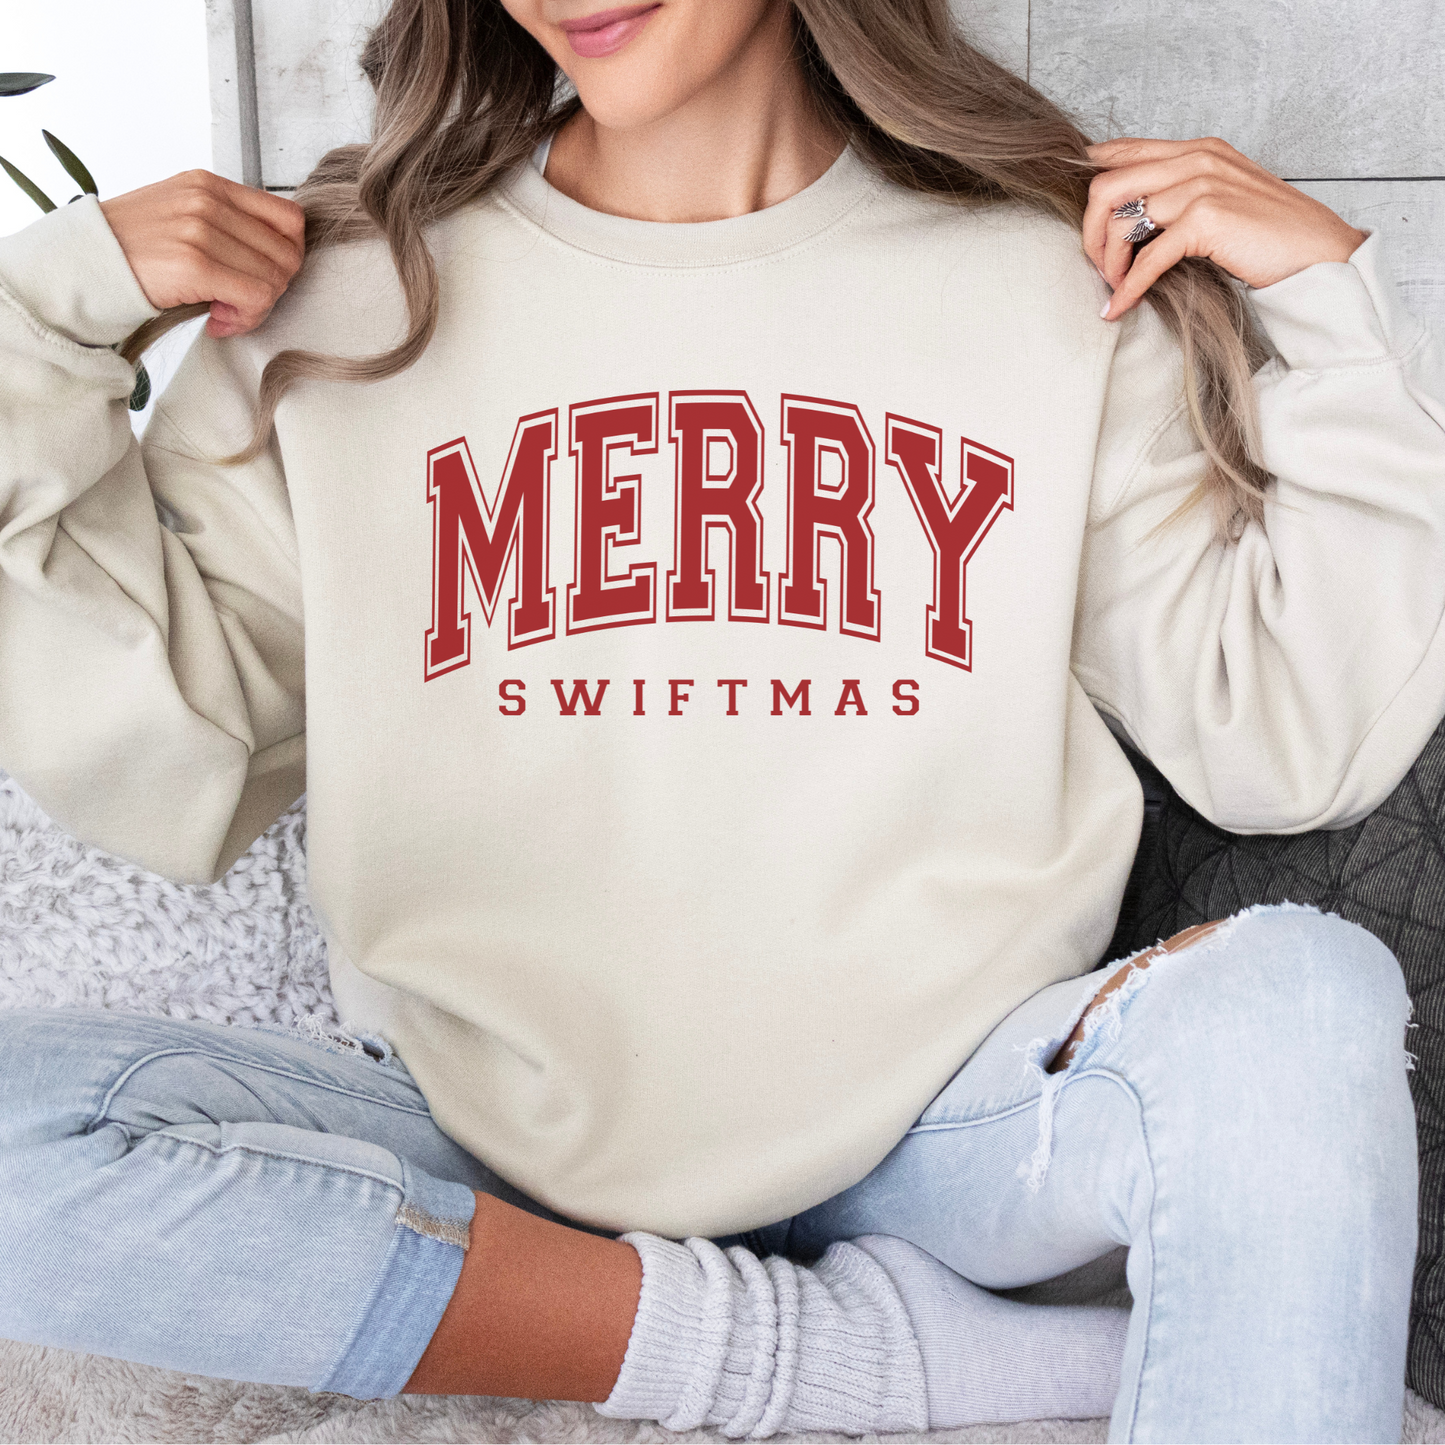 Merry Swiftmas Taylor Swift Crewneck Sweatshirt